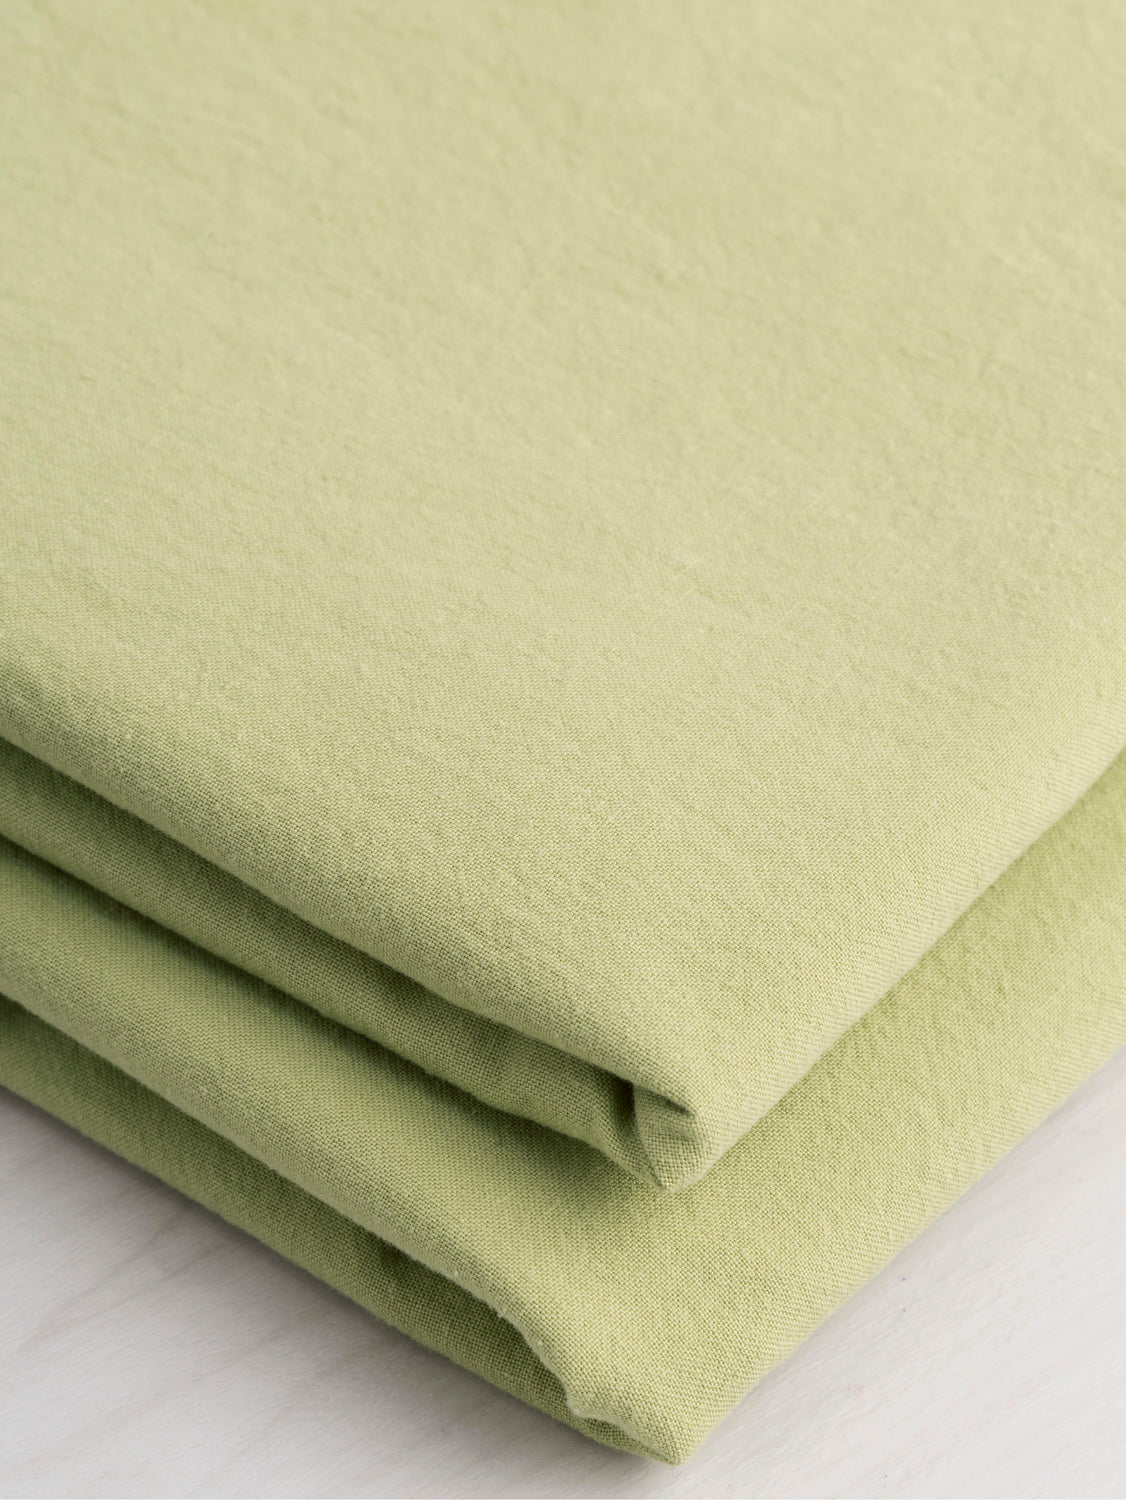 Tumbled Non Stretch Cotton - Green Tea | Core Fabrics